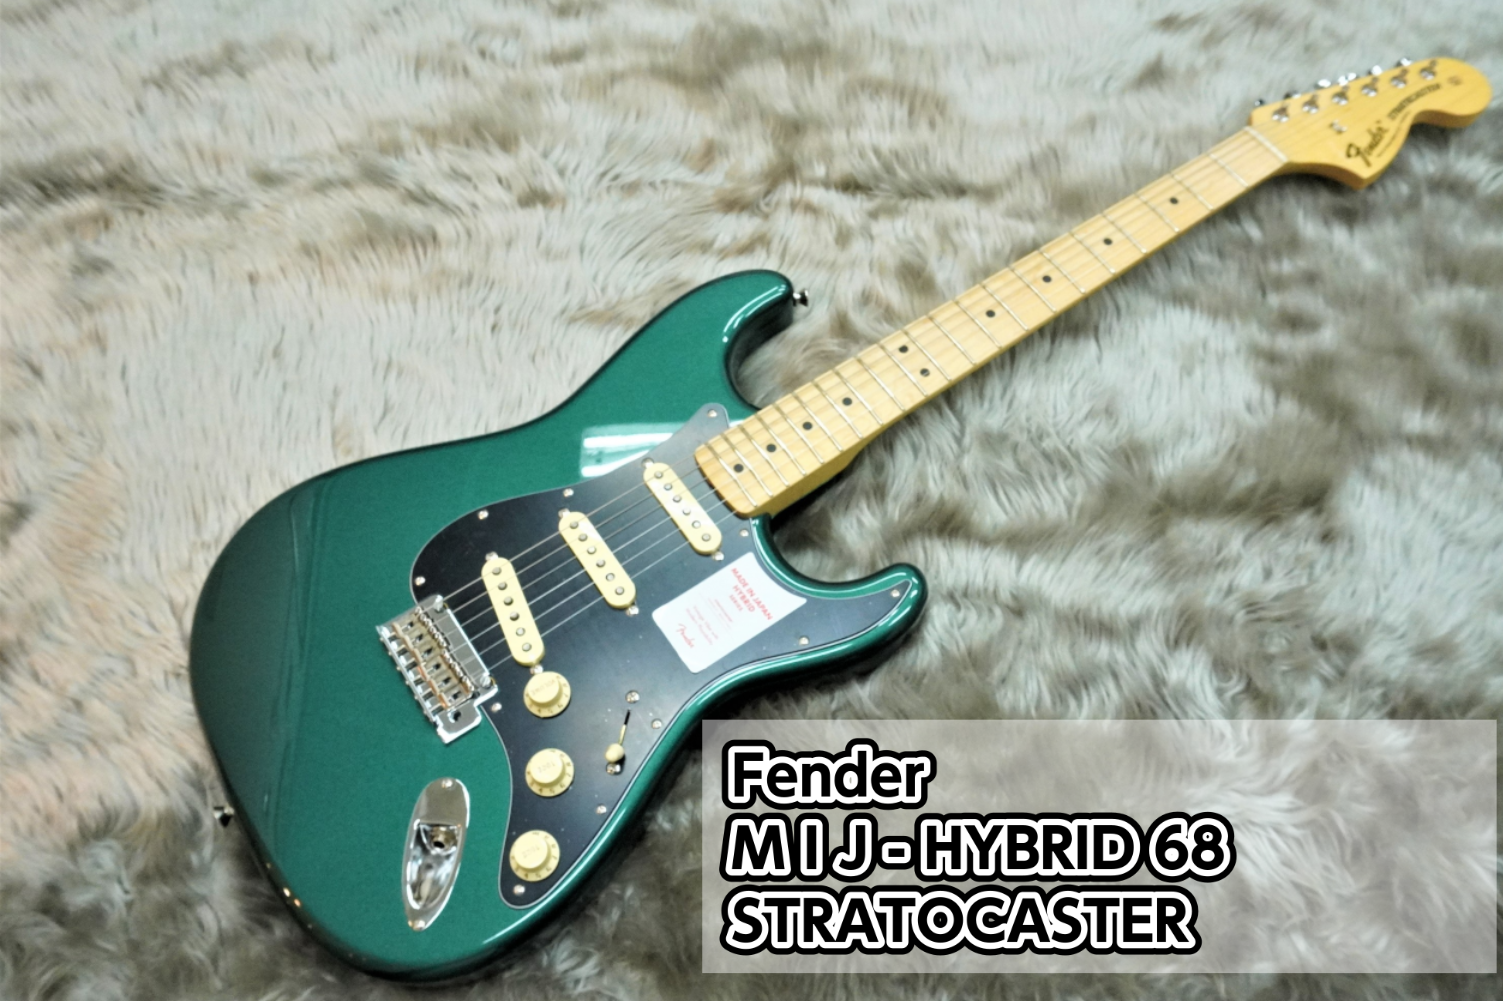 【エレキギター】Fender MADE IN JAPAN HYBRID 68 STRATOCASTER入荷のご案内